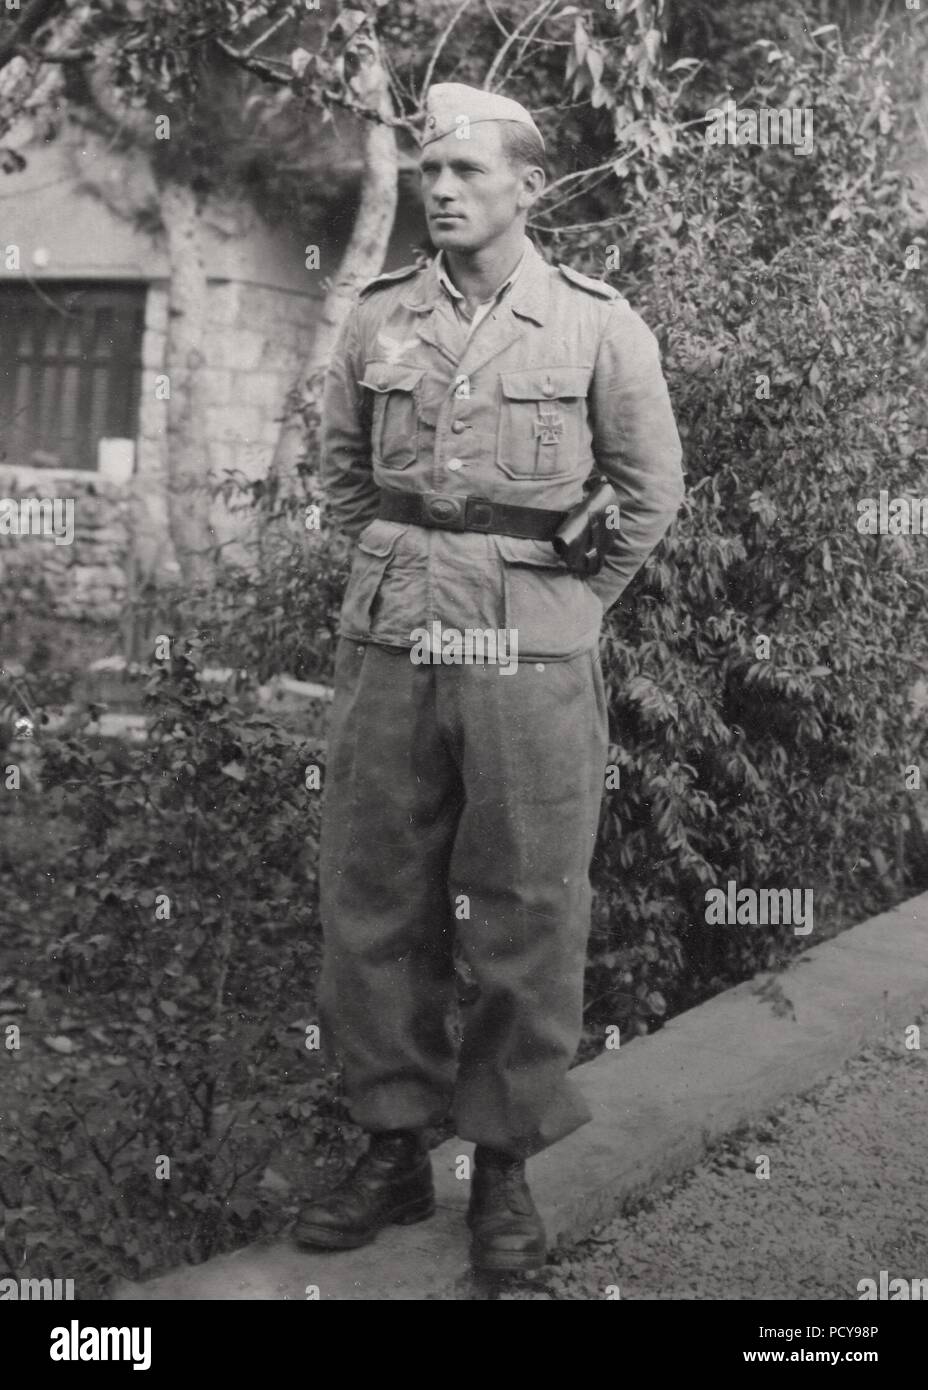 Oberfeldwebel Otto Thomas del 10. Kompanie, Fallschirmjäger-Regiment 10 pone per la telecamera durante la campagna italiana nel 1944. Otto Thomas è stato ucciso in azione il 18 settembre 1944. Egli postumo è stato aggiudicato il tedesco della croce in oro in ottobre 1944. Foto Stock